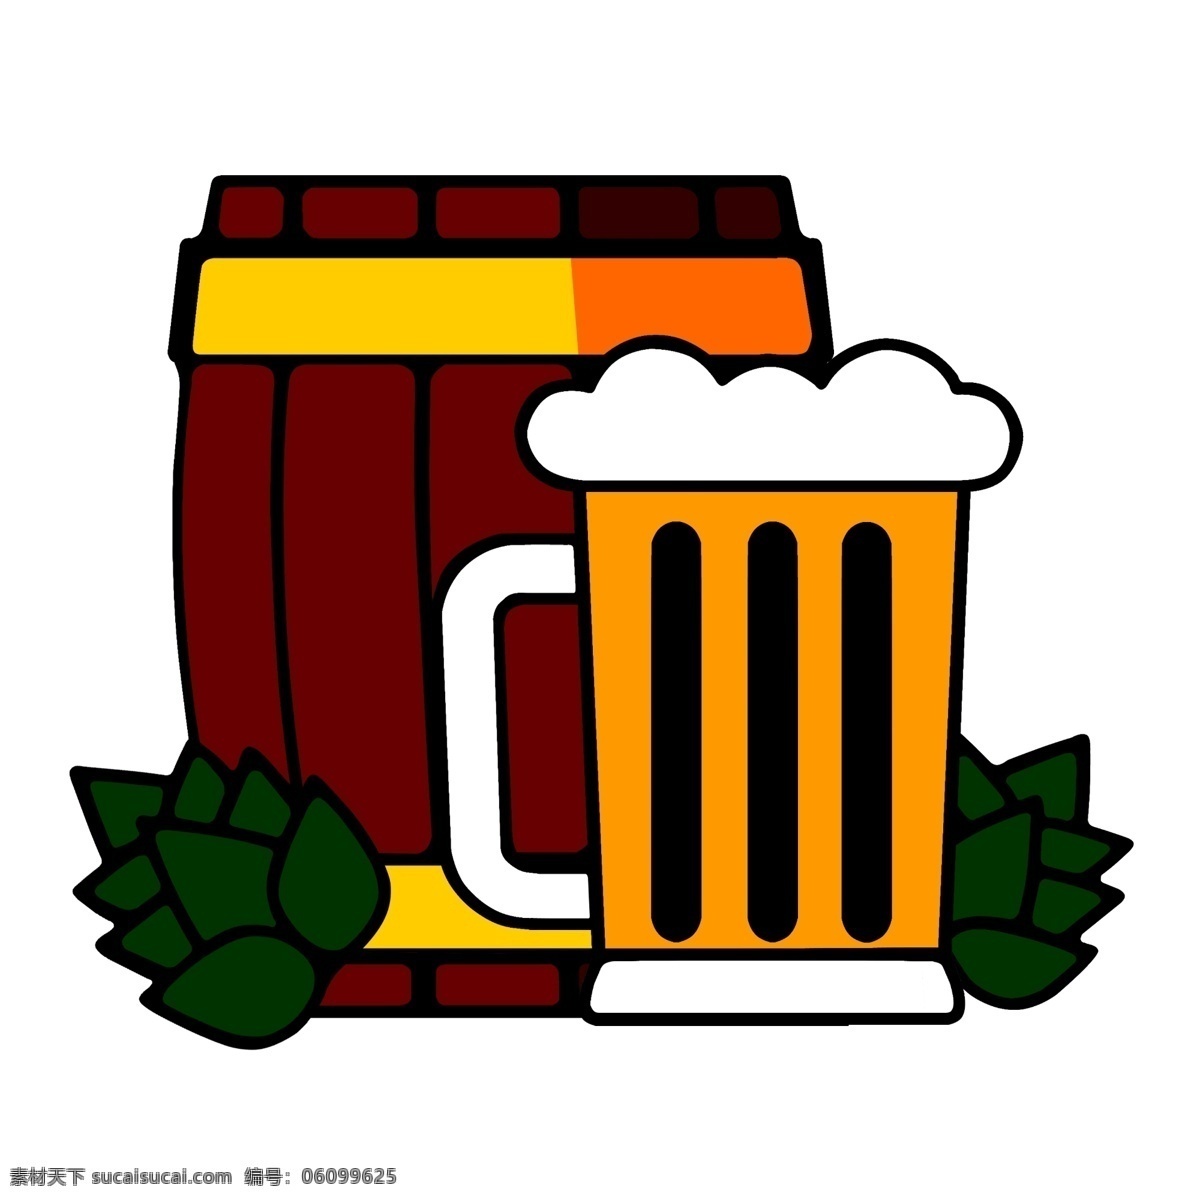 卡通啤酒图片 卡通 啤酒 啤酒桶 酒 动漫 ps排版 标志图标 其他图标